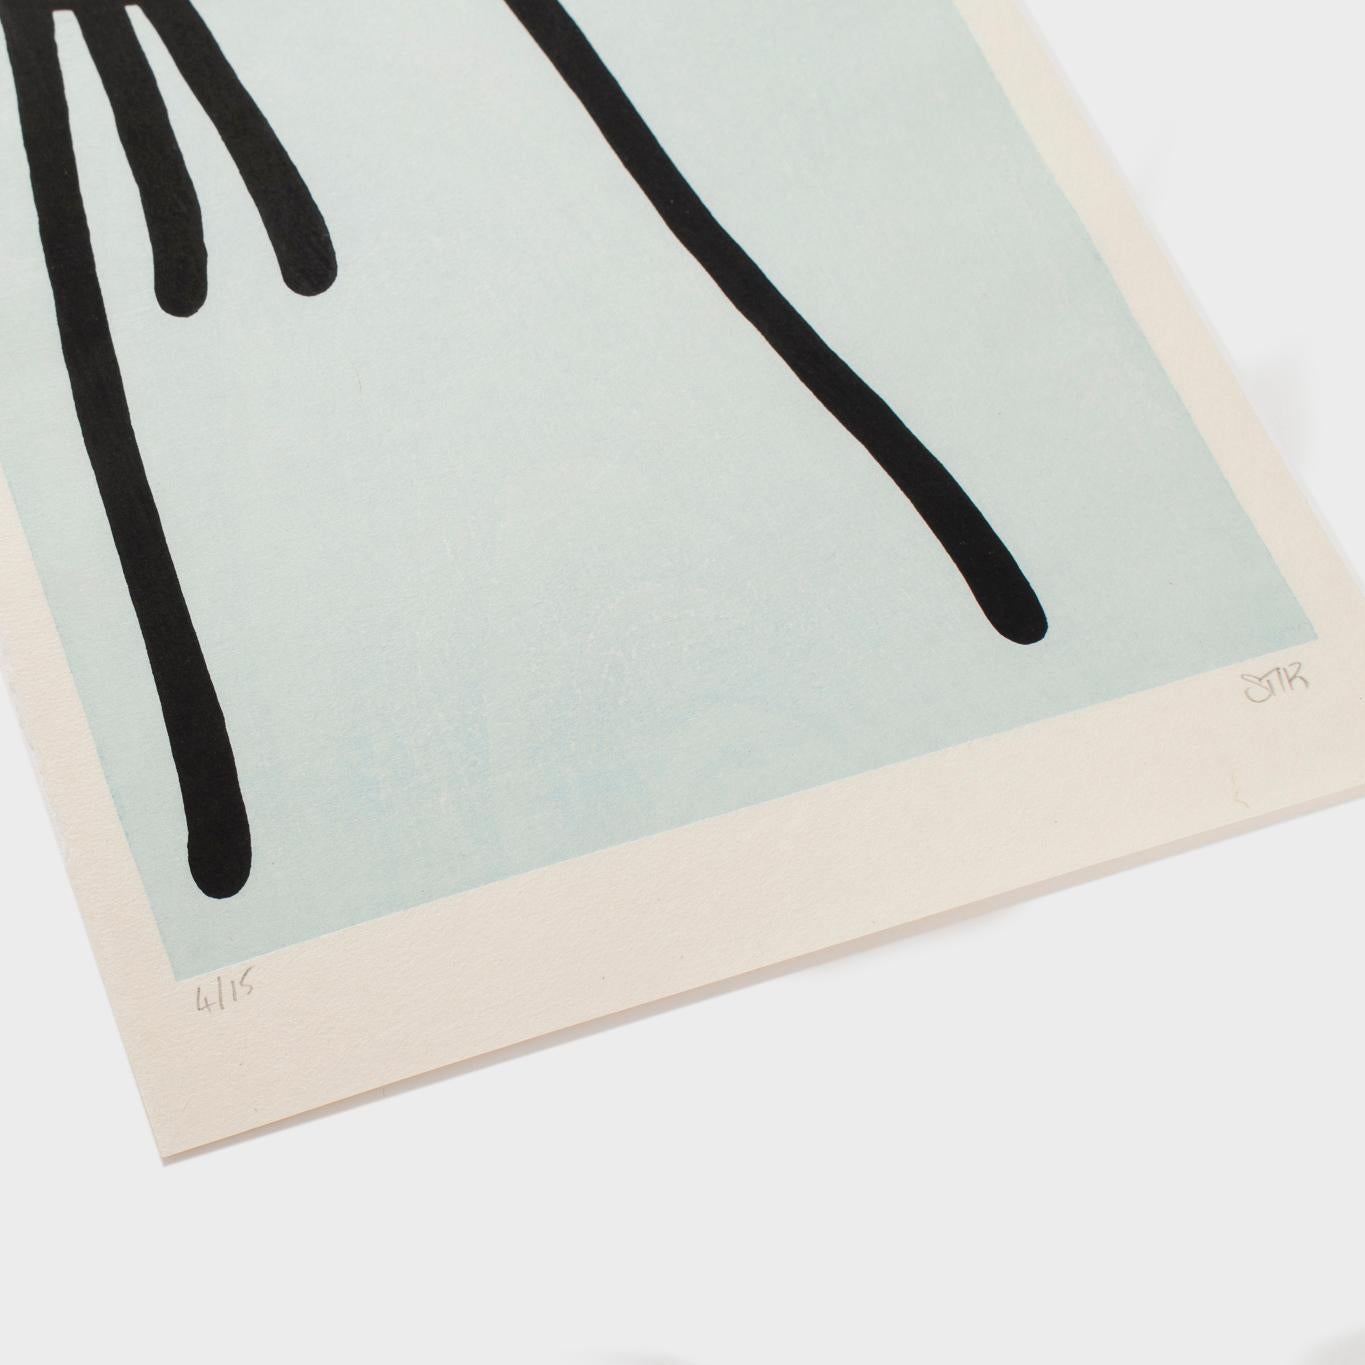 Stik, Onbu (Piggyback) (Bleu), 2013, gravure sur bois, édition limitée, Contemporary.  en vente 2